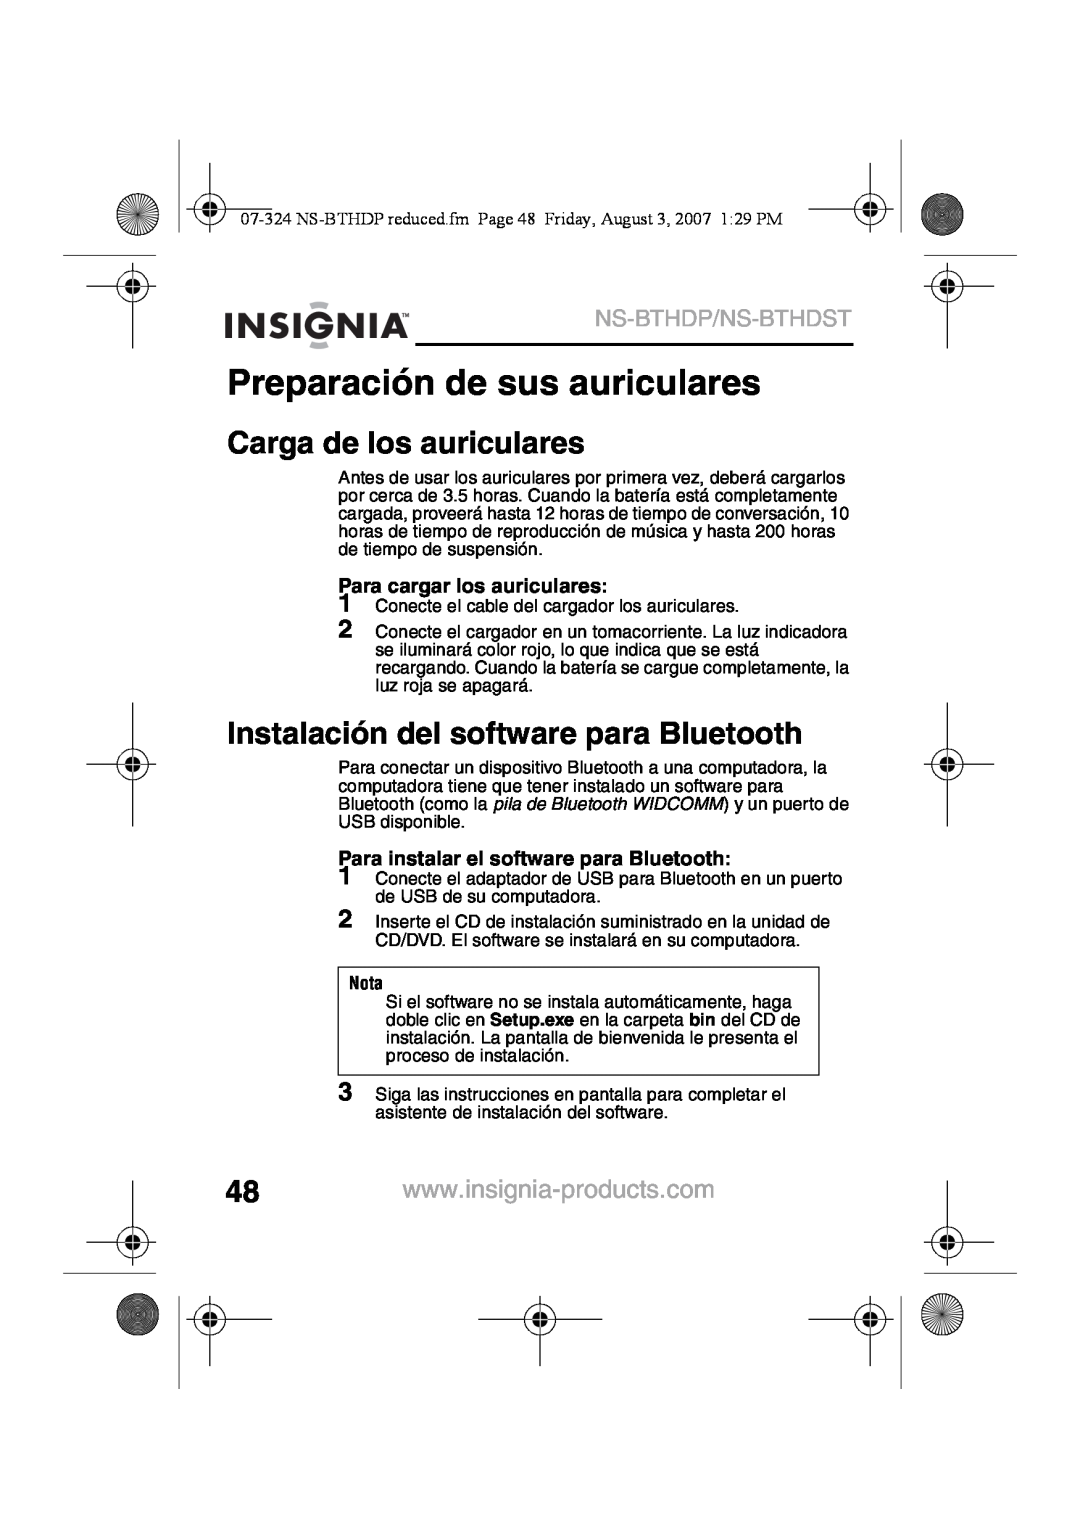 Insignia NS-BTHDST Preparación de sus auriculares, Carga de los auriculares, Instalación del software para Bluetooth, Nota 